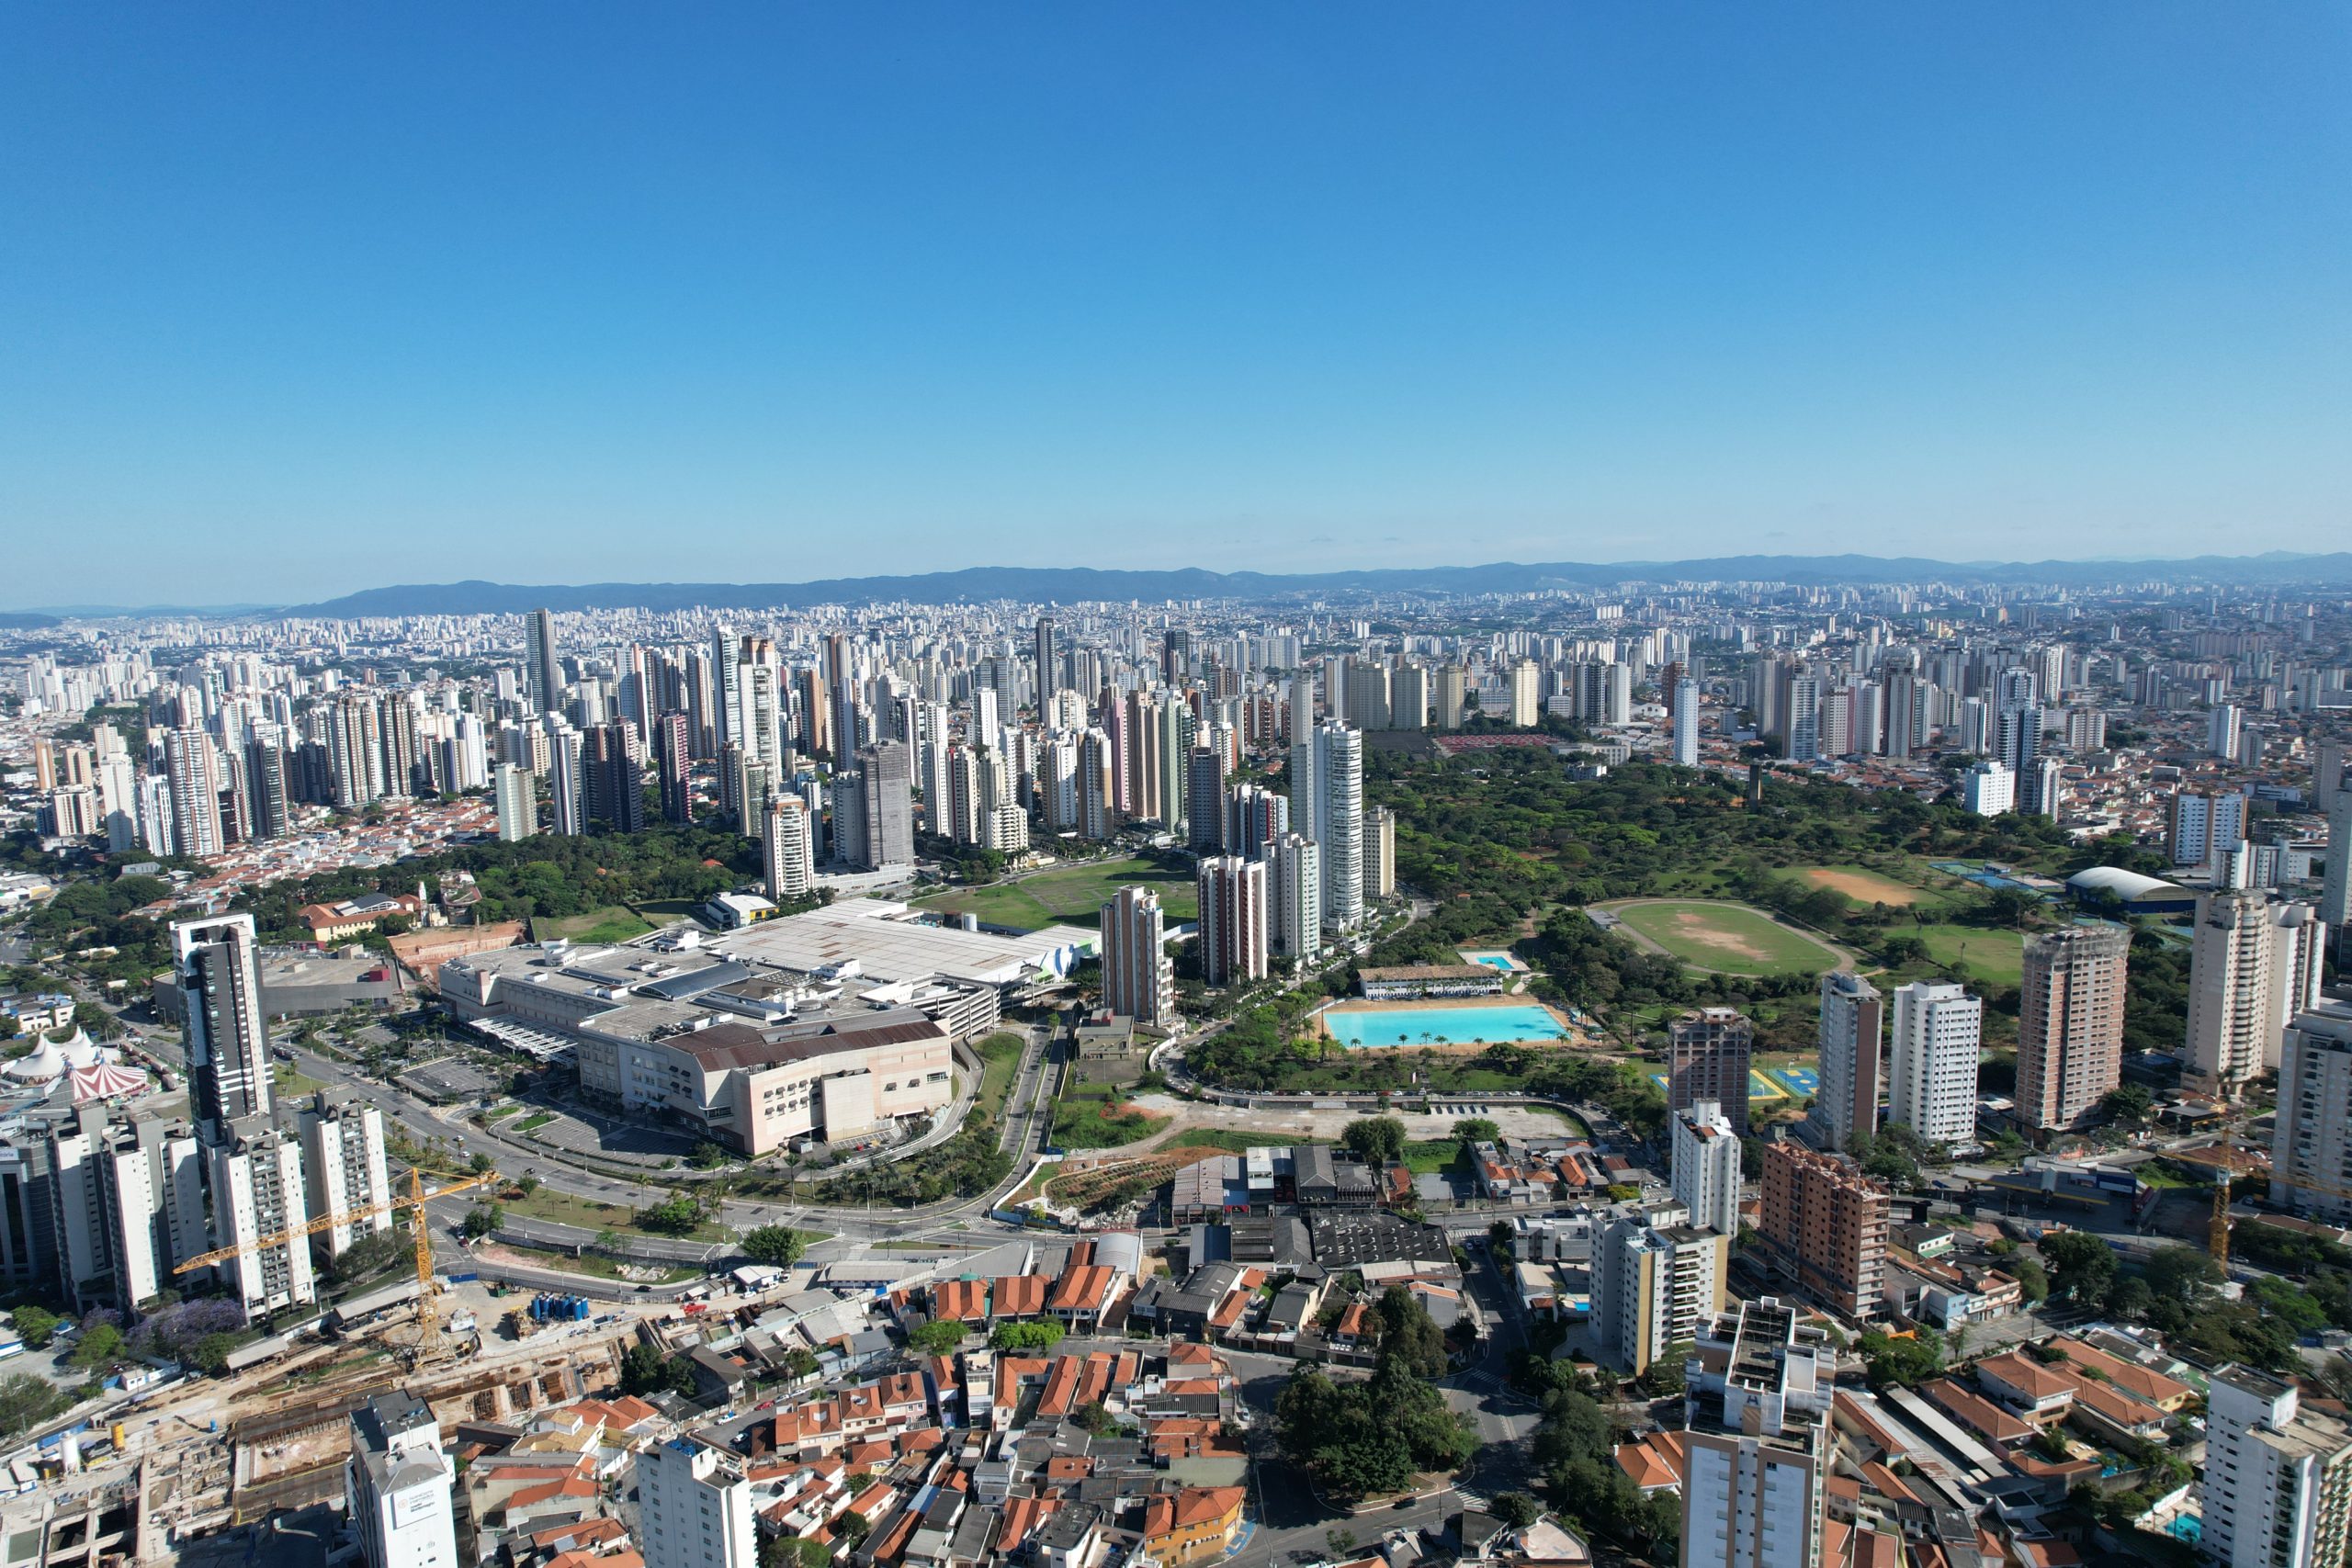 O prédio mais alto de São Paulo têm lajes corporativas, apartamentos residenciais, salas comerciais. Se posicionando como um eixo urbanístico.